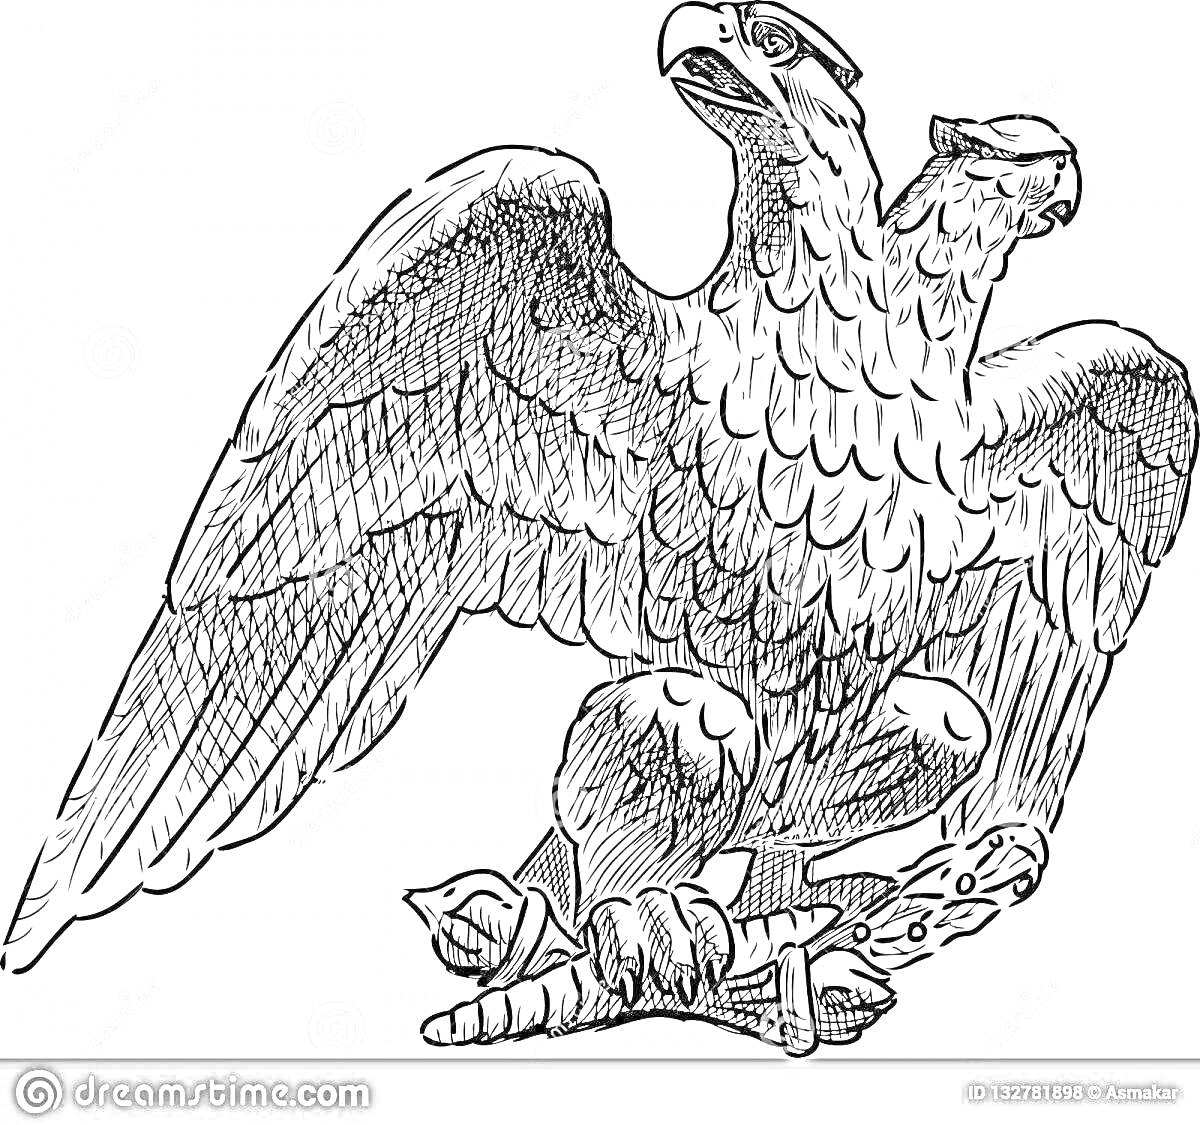 Раскраска Герб города Орла, двуглавый орёл с распростёртыми крыльями, стоящий на ветке